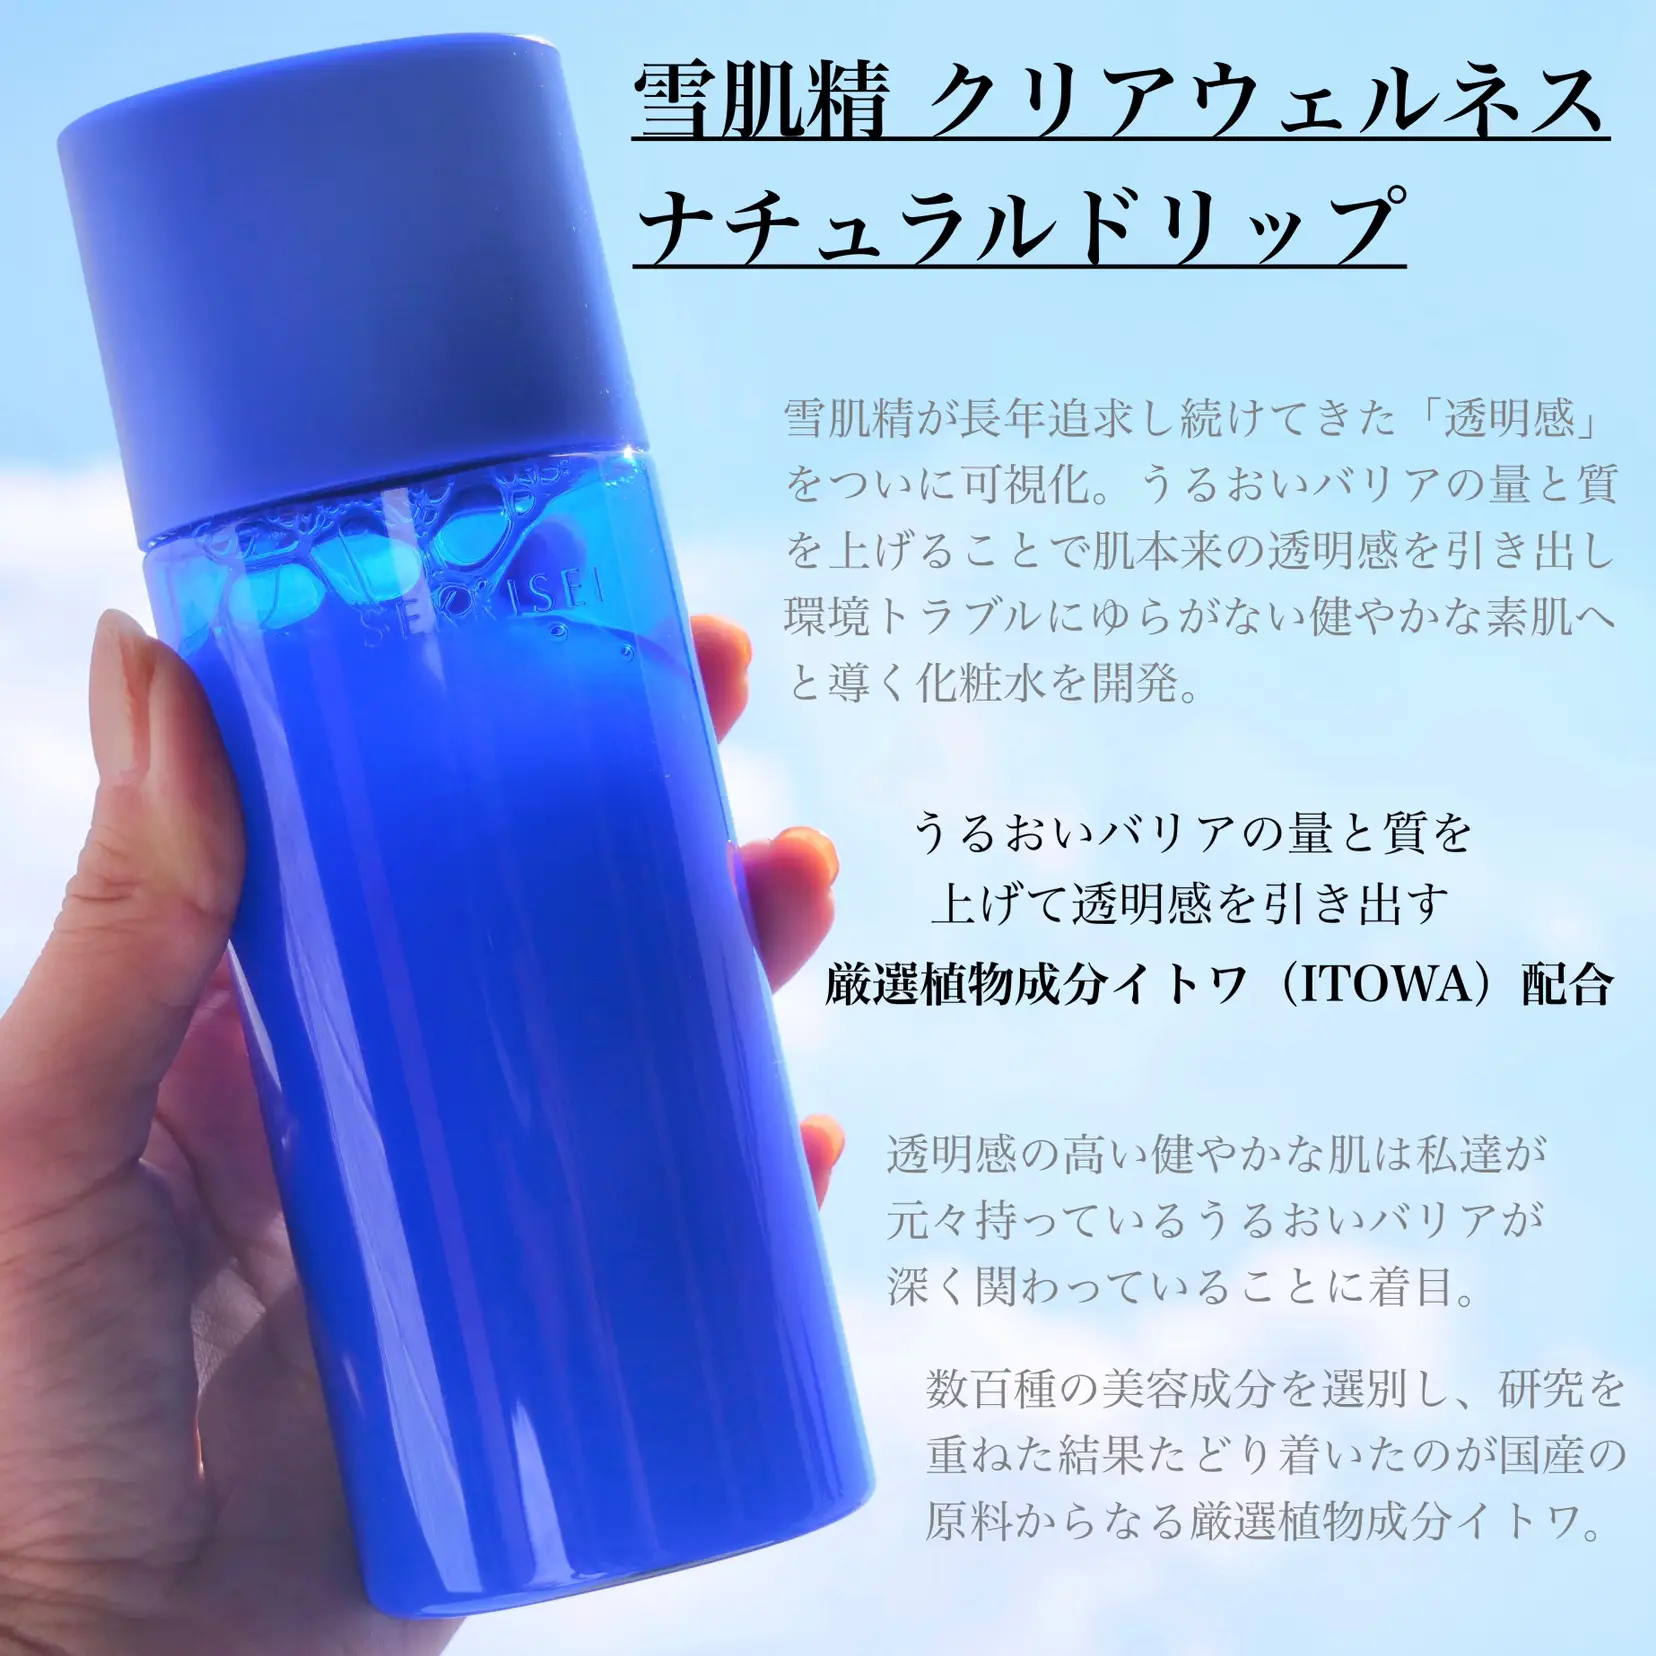 【セール通販】リーウェイ 正規品 女性用化粧水 日本人 化粧水/ローション